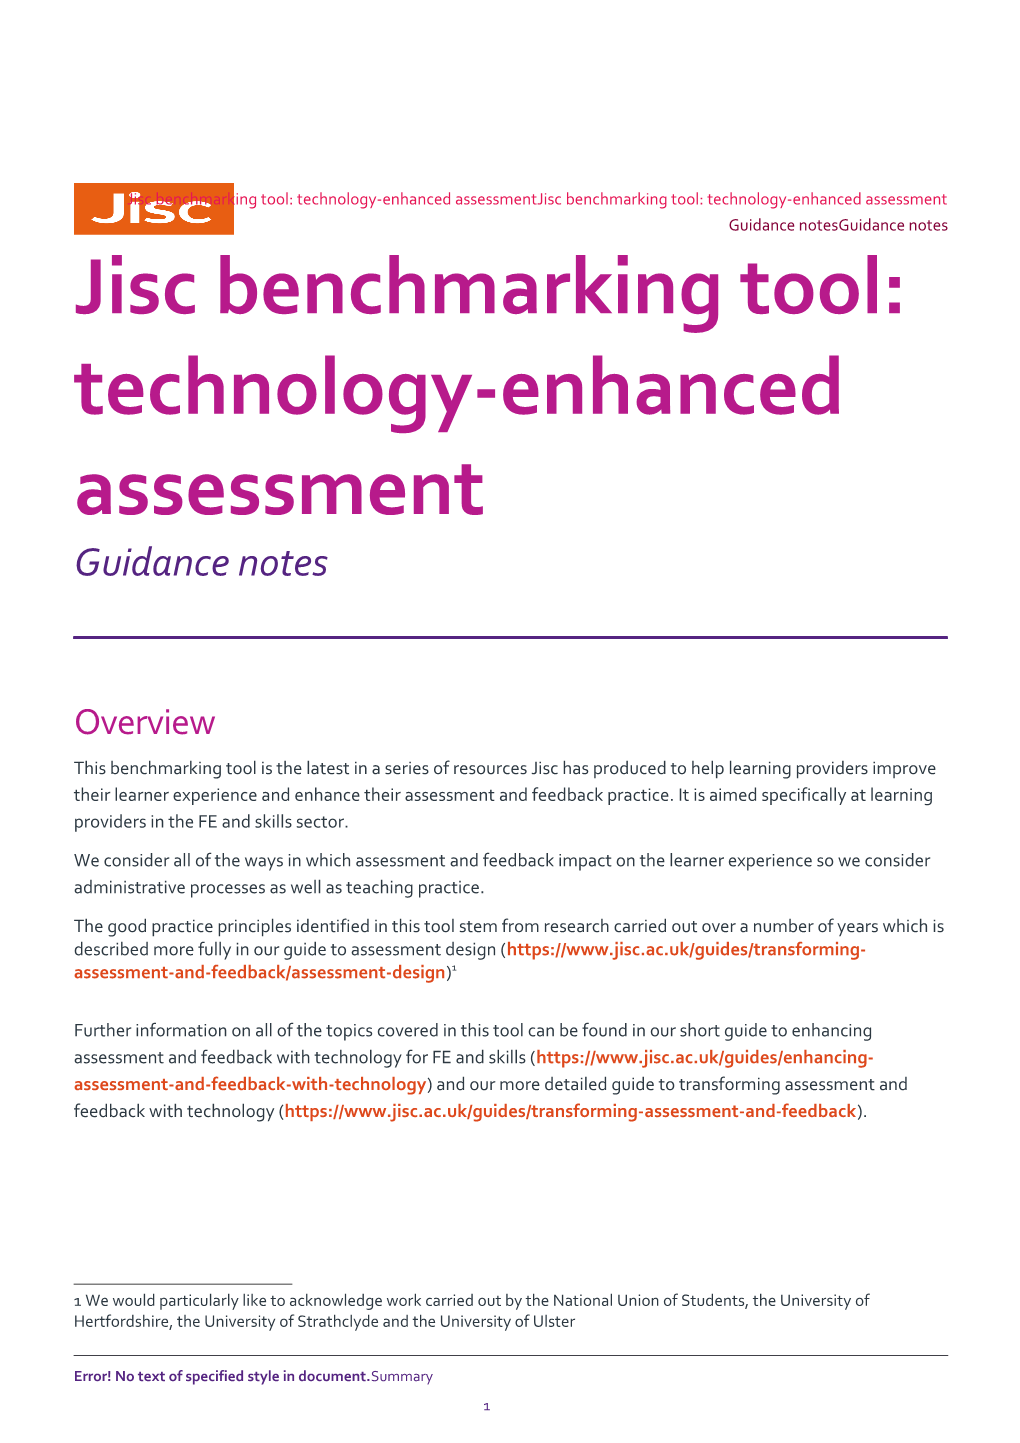 Jisc Benchmarking Tool: Technology-Enhanced Assessment